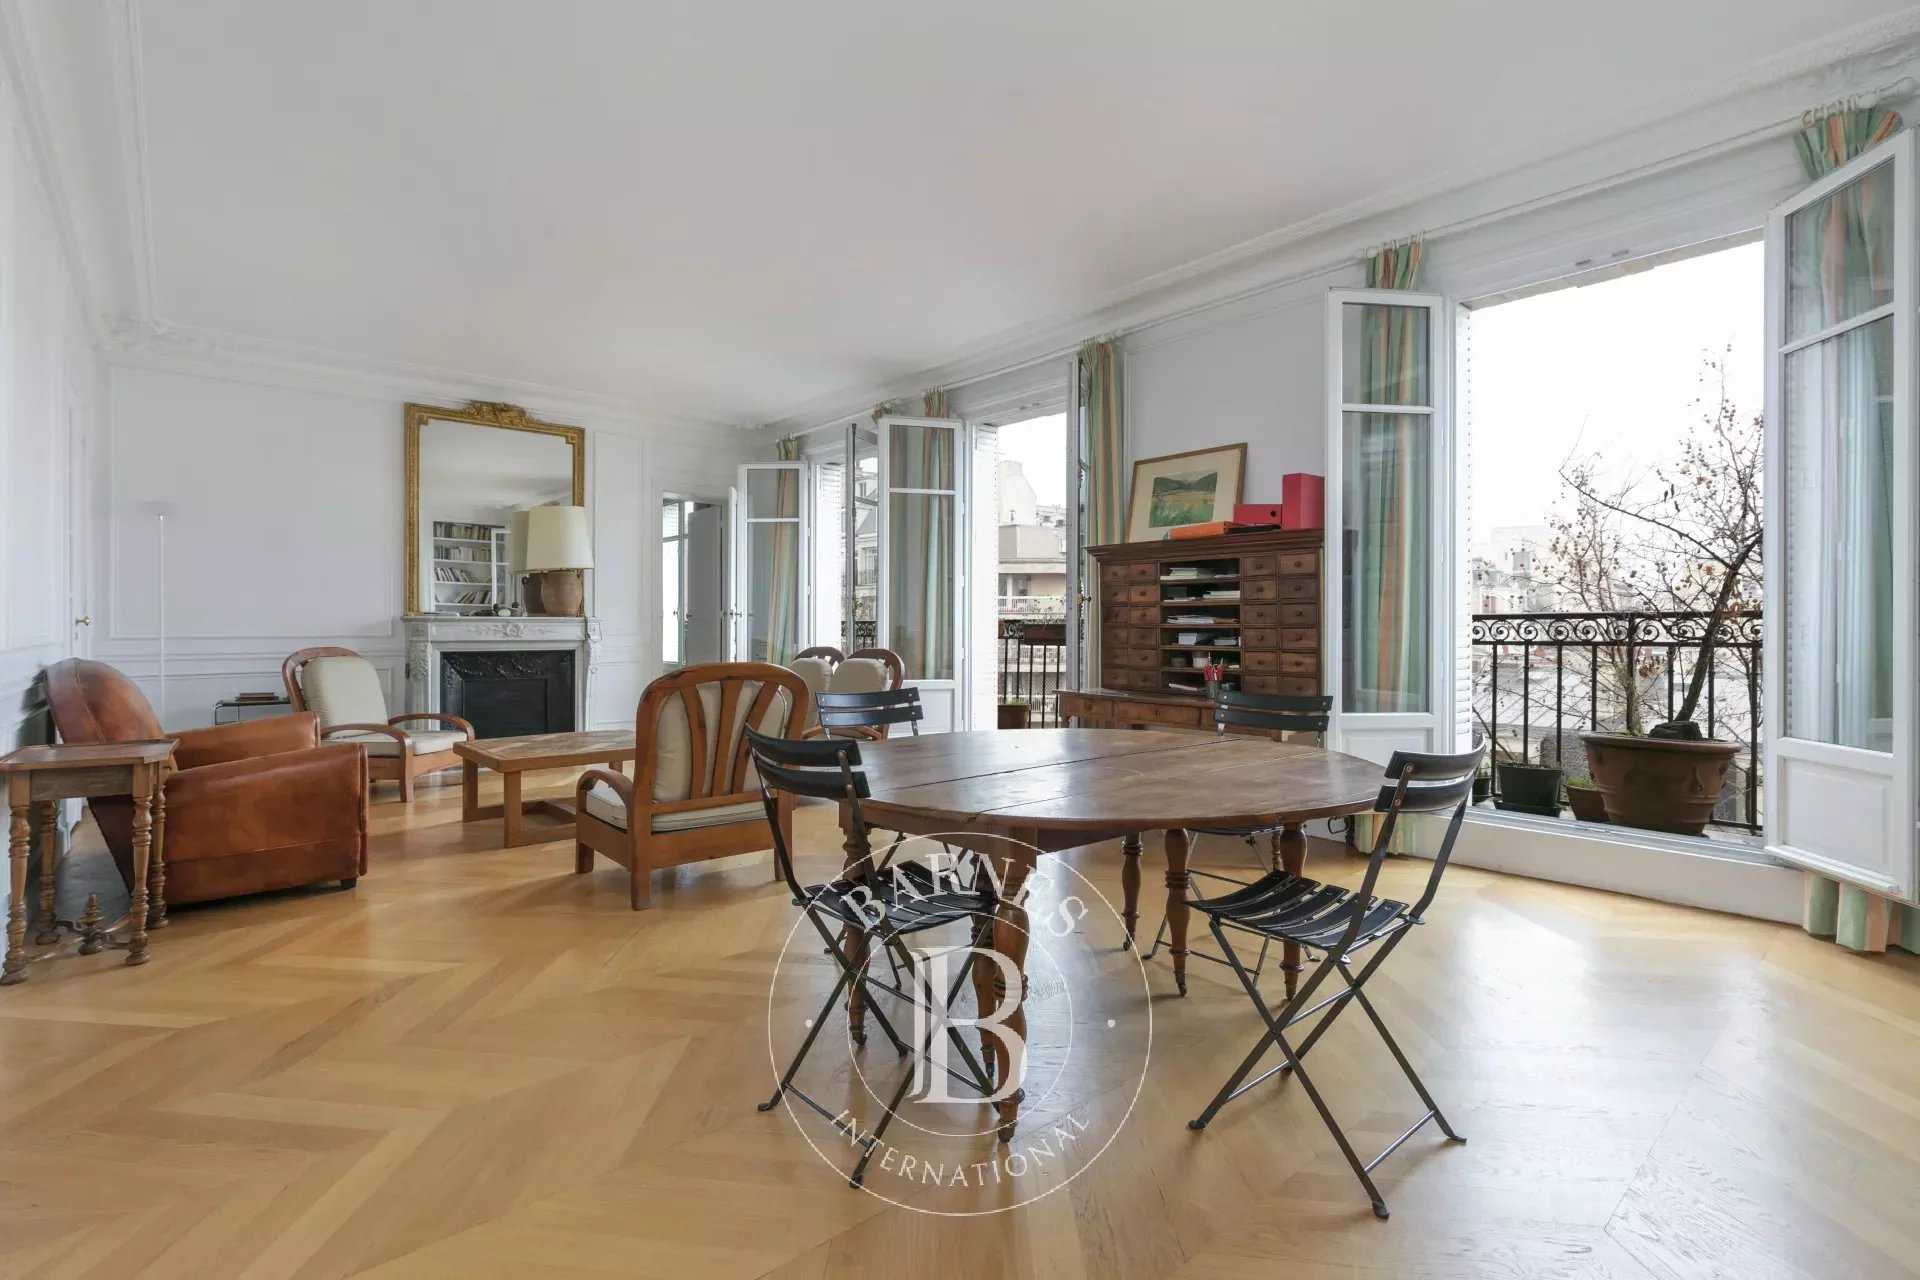 Apartment for sale 2 Bedrooms 1184 sq ft Paris 17 - € 1,550,000